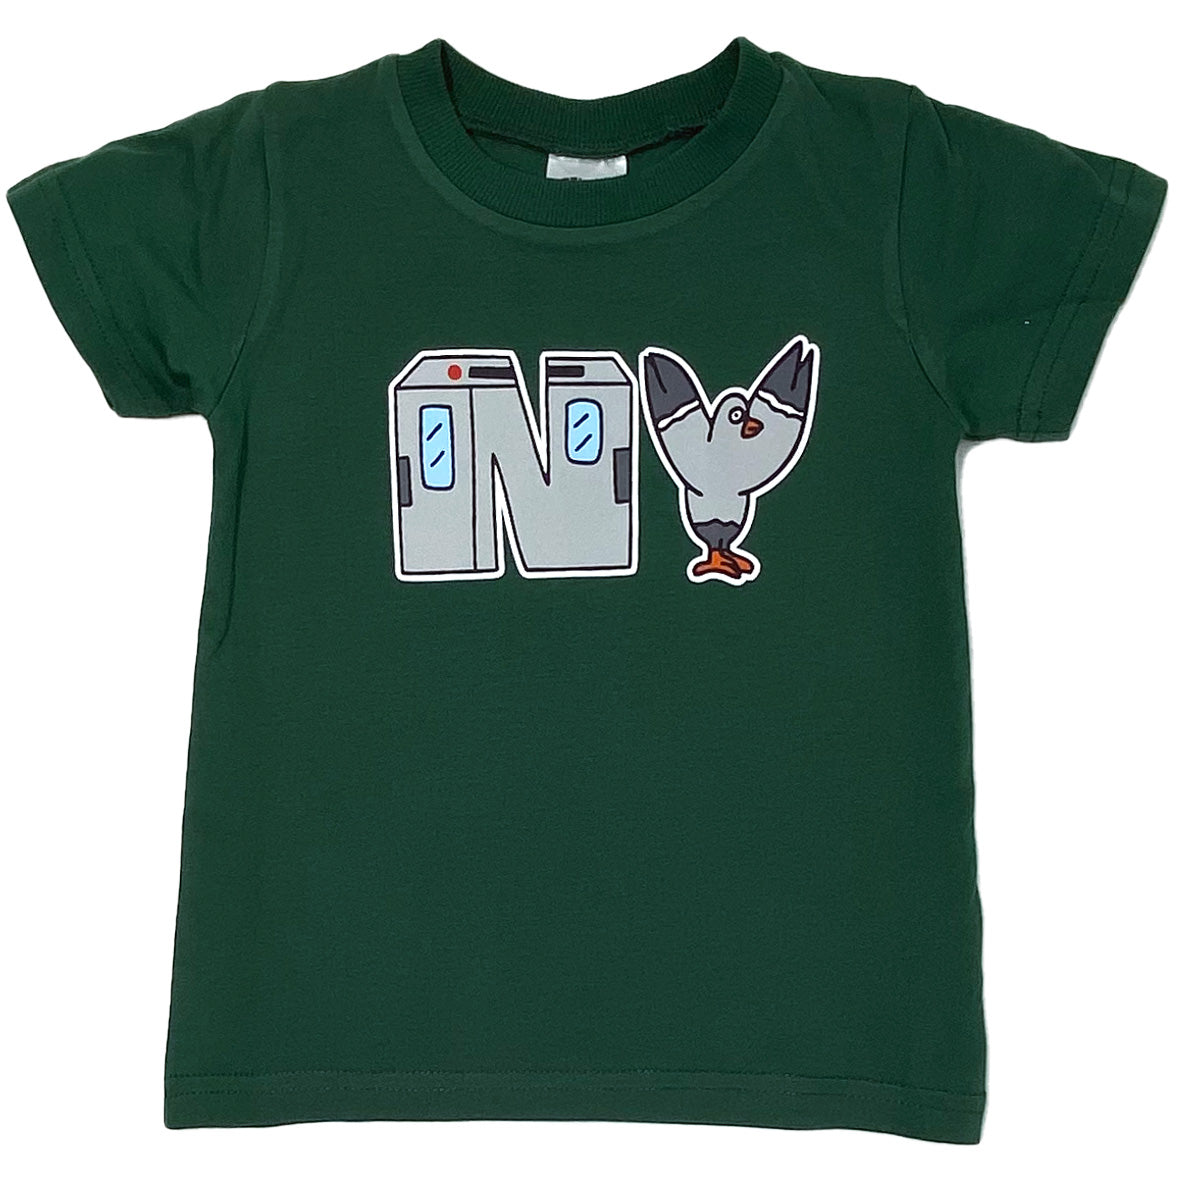 N.Y. T-Shirt (Kale)